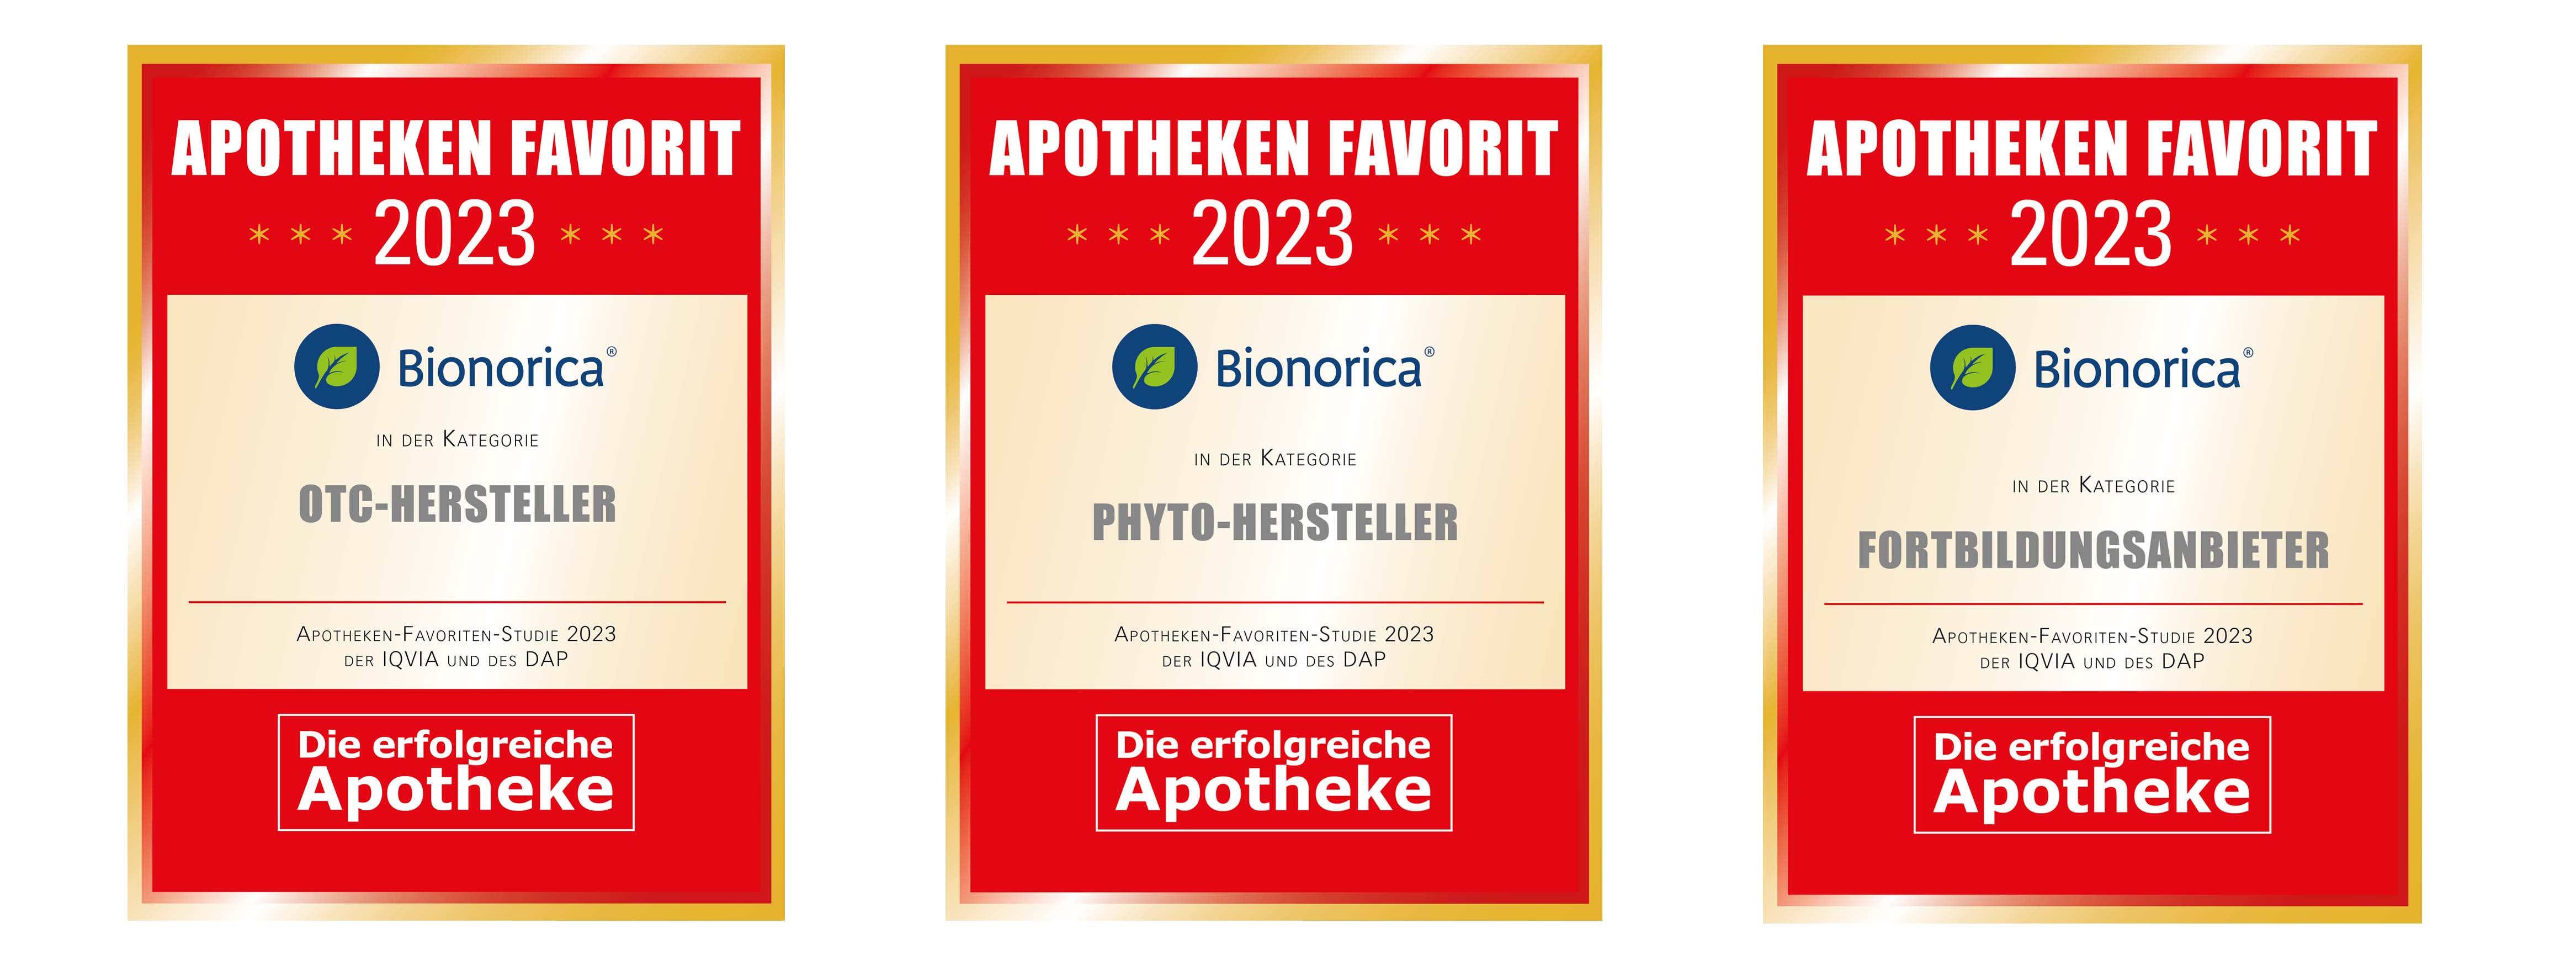 Bionorica ist beim Apotheken Favorit gleich in drei Kategorien auf Platz 1